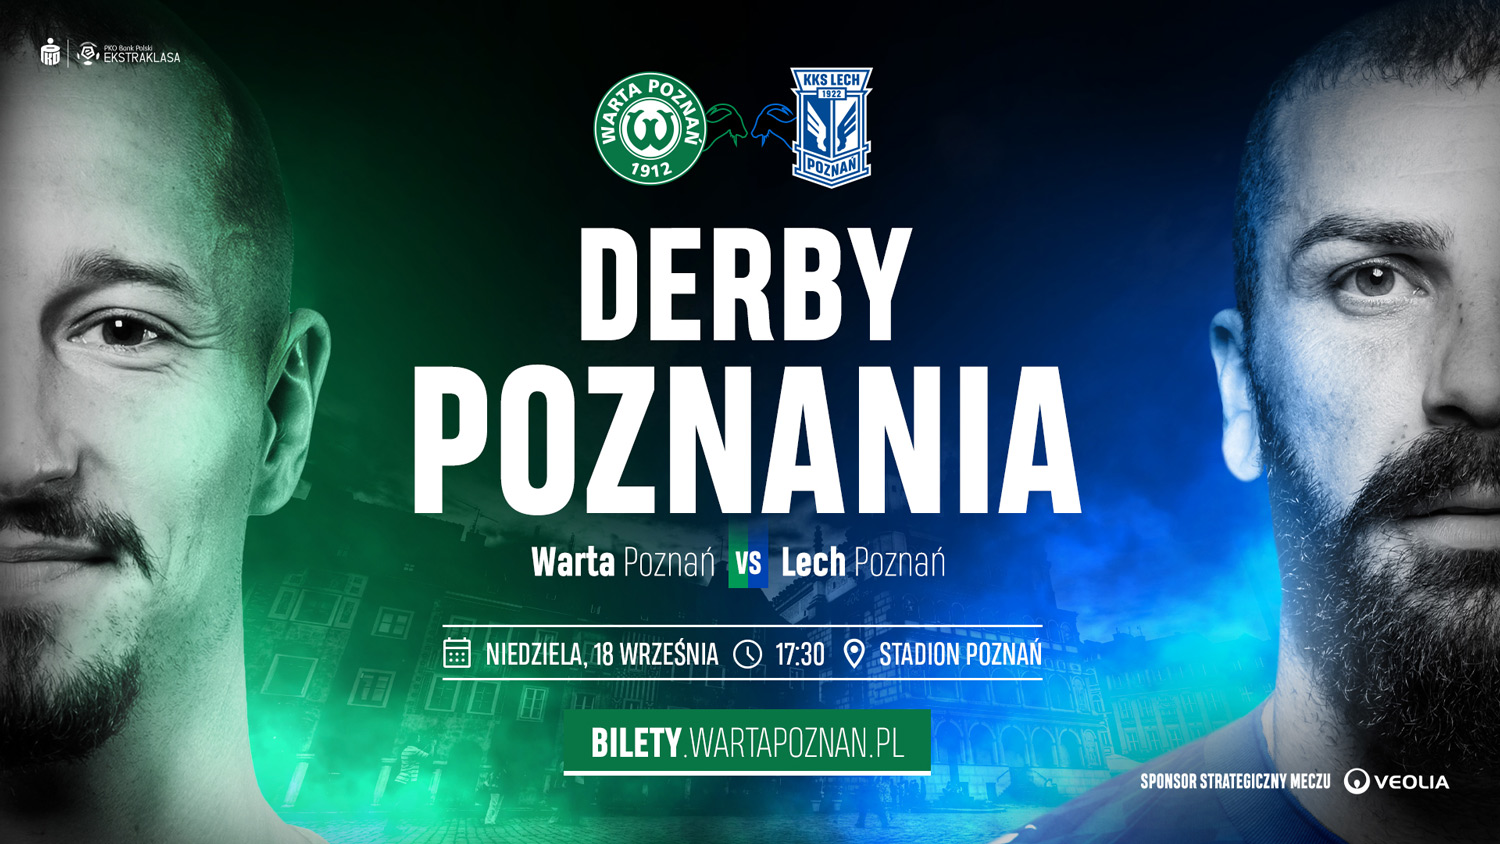 Kup bilet na derby Poznania, Warta Poznań - Lech Poznań